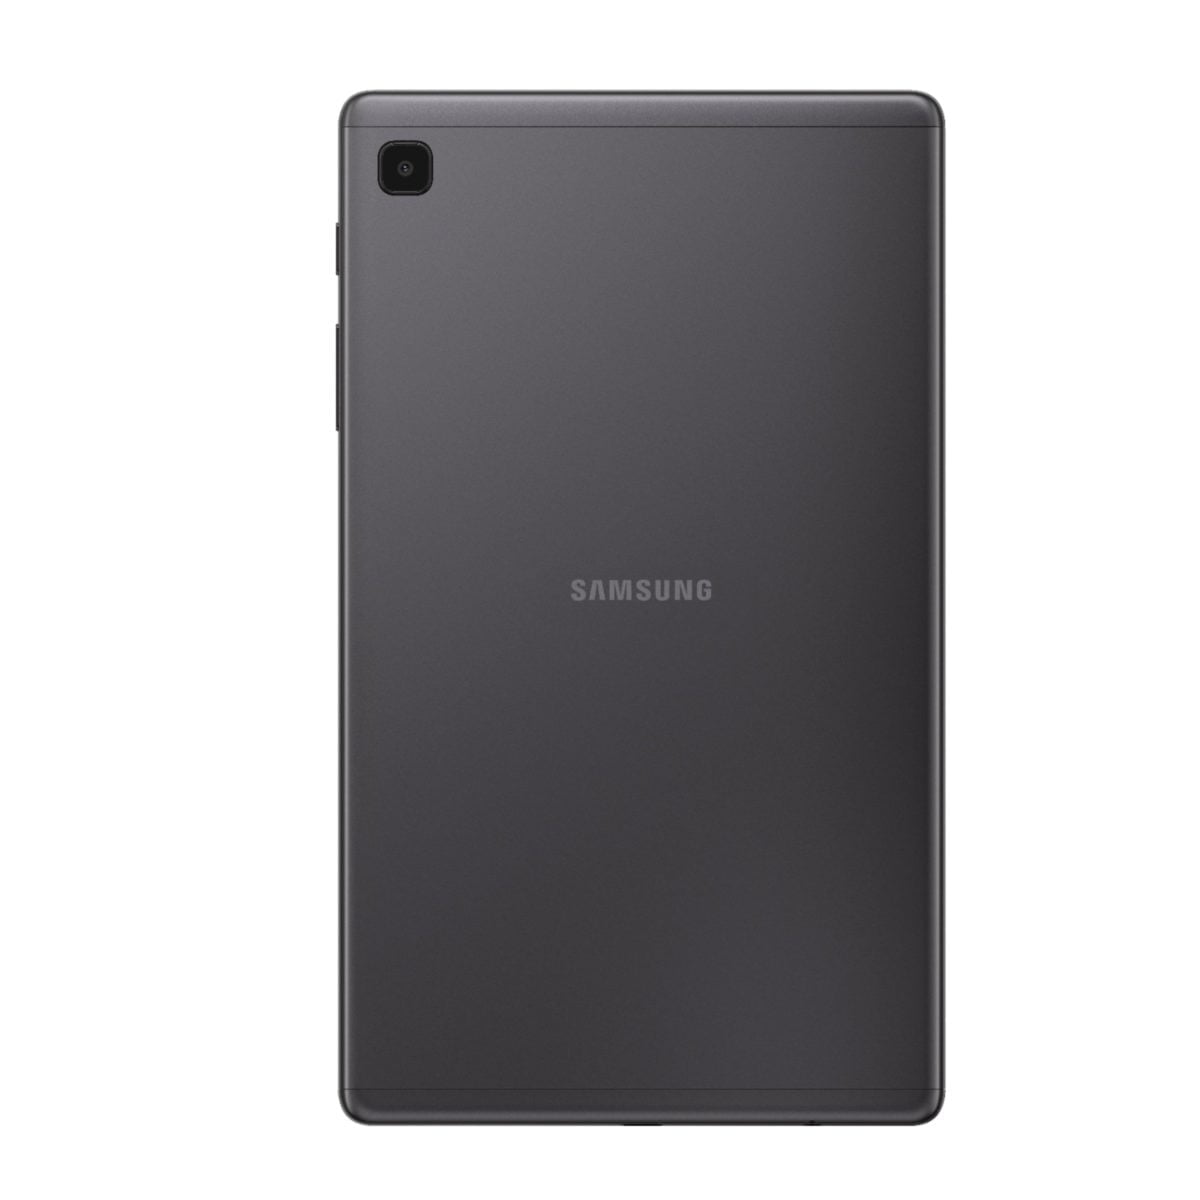 6464584Cv11D Scaled سامسونج &Lt;H1&Gt;سامسونج جالاكسي تاب A7 لايت 32 جيجا بايت - رمادي غامق&Lt;/H1&Gt;
تعرف على الجهاز الذي ستحبه عائلتك بأكملها: Samsung Galaxy Tab A7 Lite ، الجهاز اللوحي المصنوع لمشاركته. بفضل شاشته المدمجة مقاس 8.7 بوصات ، يعد Galaxy Tab A7 Lite بحجم مثالي للترفيه أثناء التنقل. تم تصميم إطاره المعدني القوي ليتم إحضاره من غرفة المعيشة إلى عطلتك الشاطئية ، أو أينما تريد أن تأخذه. يأتي Galaxy Tab A7 Lite مزودا بإمكانية الوصول إلى ساعات من Youtube Premium و Samsung Tv الخالي من الإعلانات دون أي رسوم إضافية حتى تتمكن من إبقاء العائلة سعيدة دون انقطاع مزعج. بالإضافة إلى ذلك ، مع معالج قوي للبث السريع والكثير من التخزين لملفاتك المفضلة ، يبسط Galaxy Tab A7 Lite احتياجات الترفيه للجميع تحت سقفك. سامسونج جالاكسي تاب سامسونج جالاكسي تاب A7 لايت 32 جيجا بايت خلوي - رمادي غامق